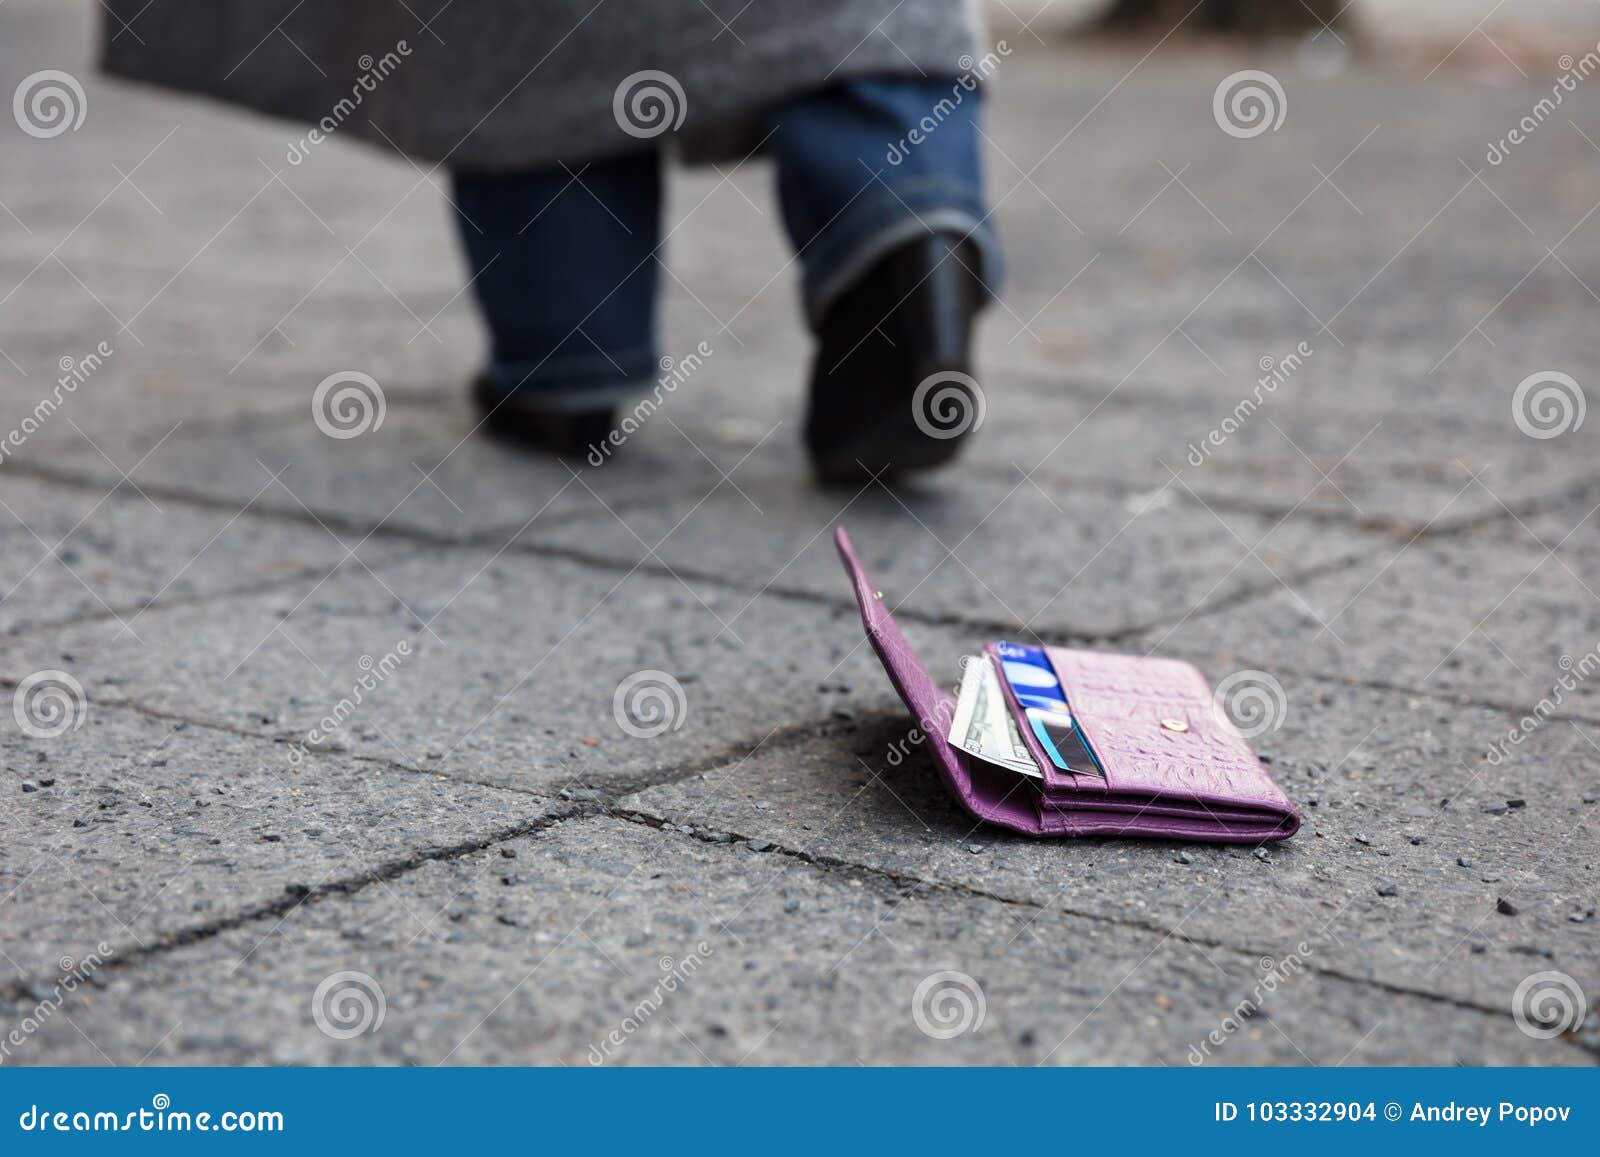 woman walking losing her purse street lost purse street 103332904